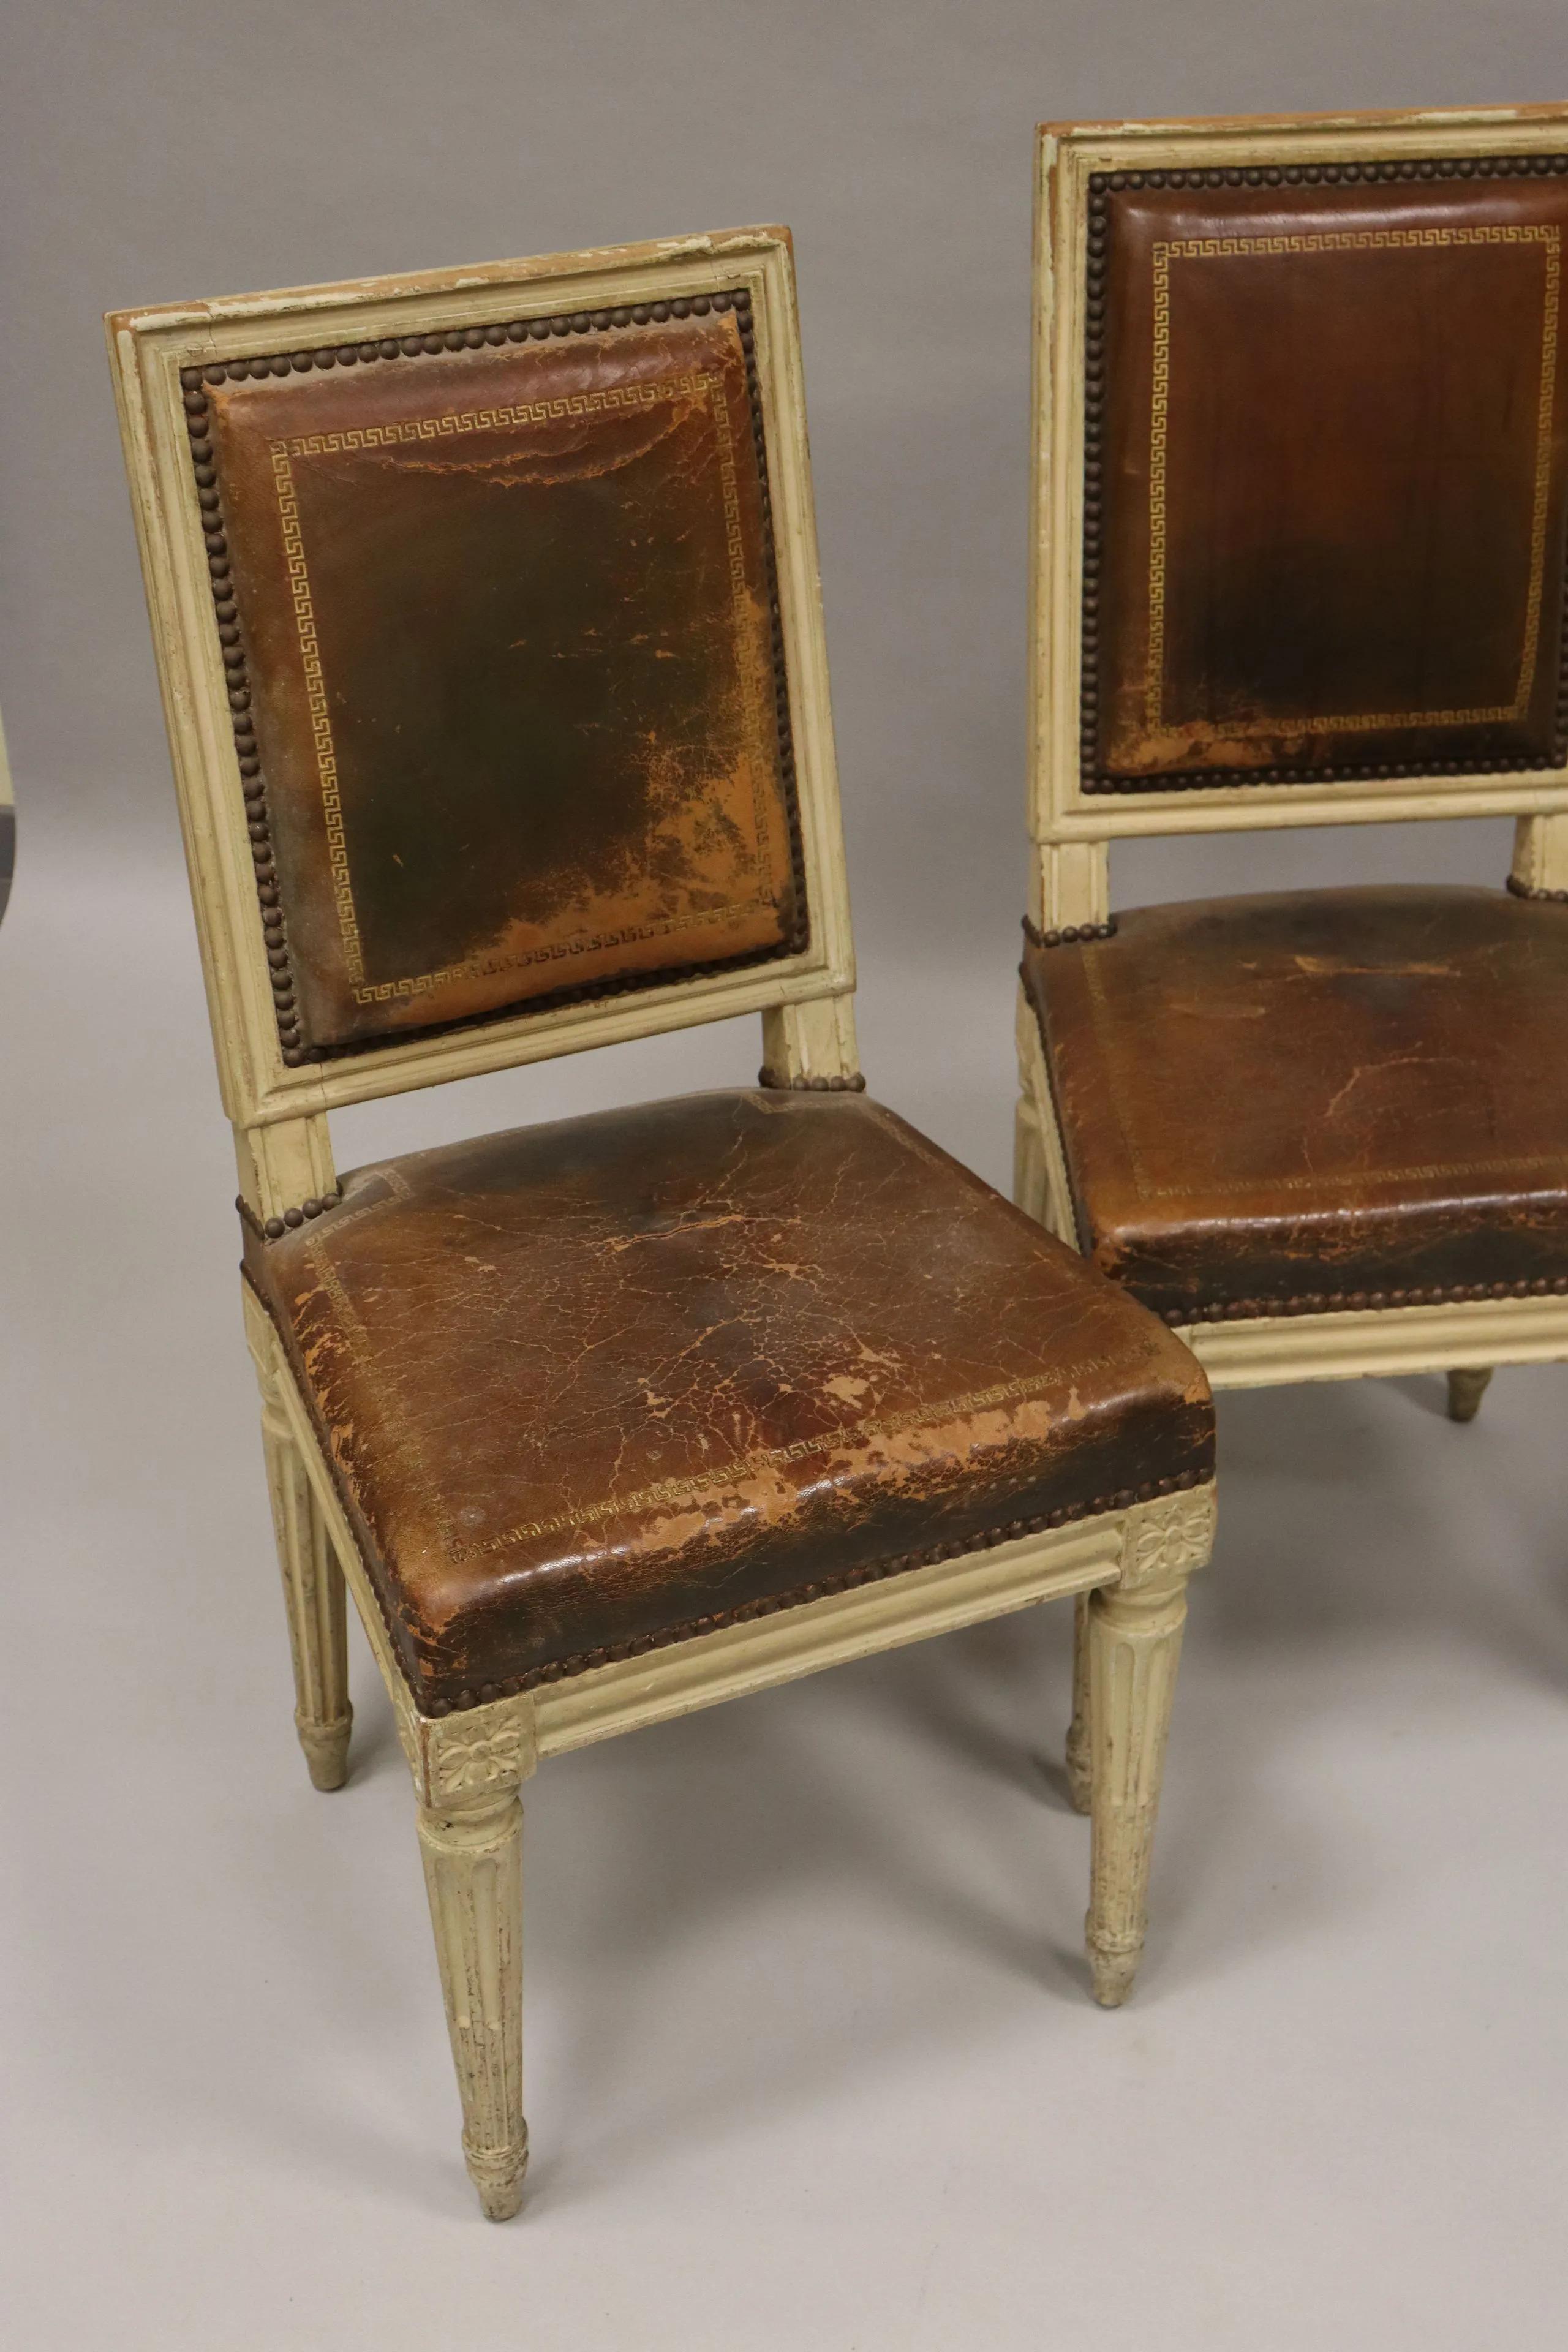 Armand Albert Rateau (1882-1938), vier Stühle im neoklassischen Louis XVI-Stil aus geformter Buche mit Ledersitz.
Originalzustand, gestempelt und nummeriert.
Sehr schöne Provenienz.